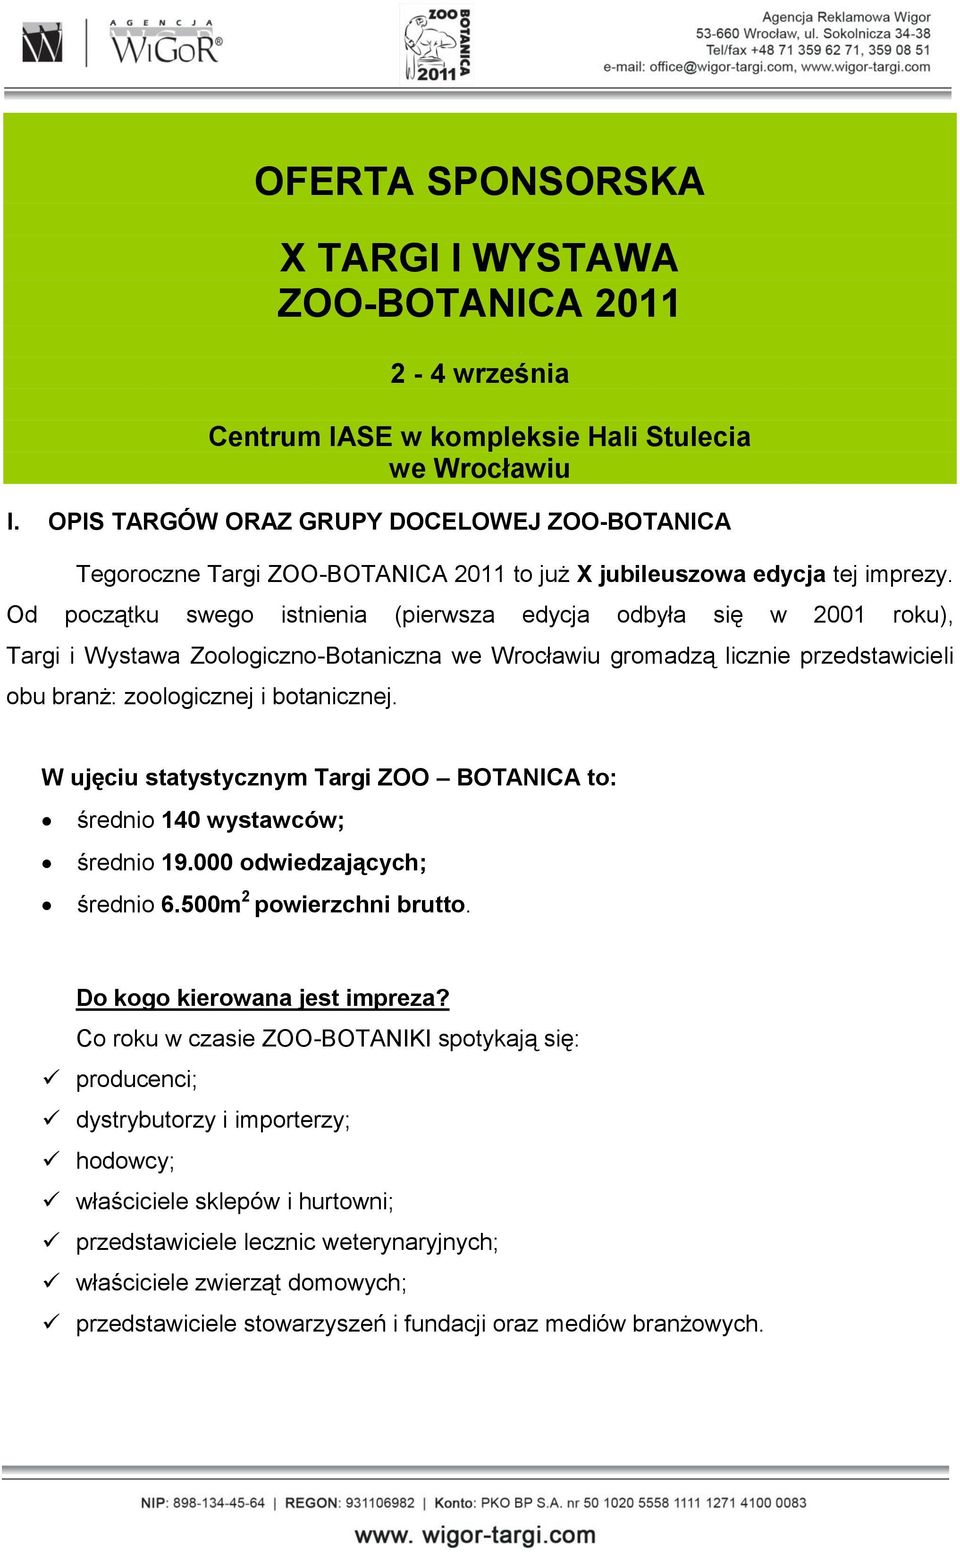 Od początku swego istnienia (pierwsza edycja odbyła się w 2001 roku), Targi i Wystawa Zoologiczno-Botaniczna we Wrocławiu gromadzą licznie przedstawicieli obu branż: zoologicznej i botanicznej.